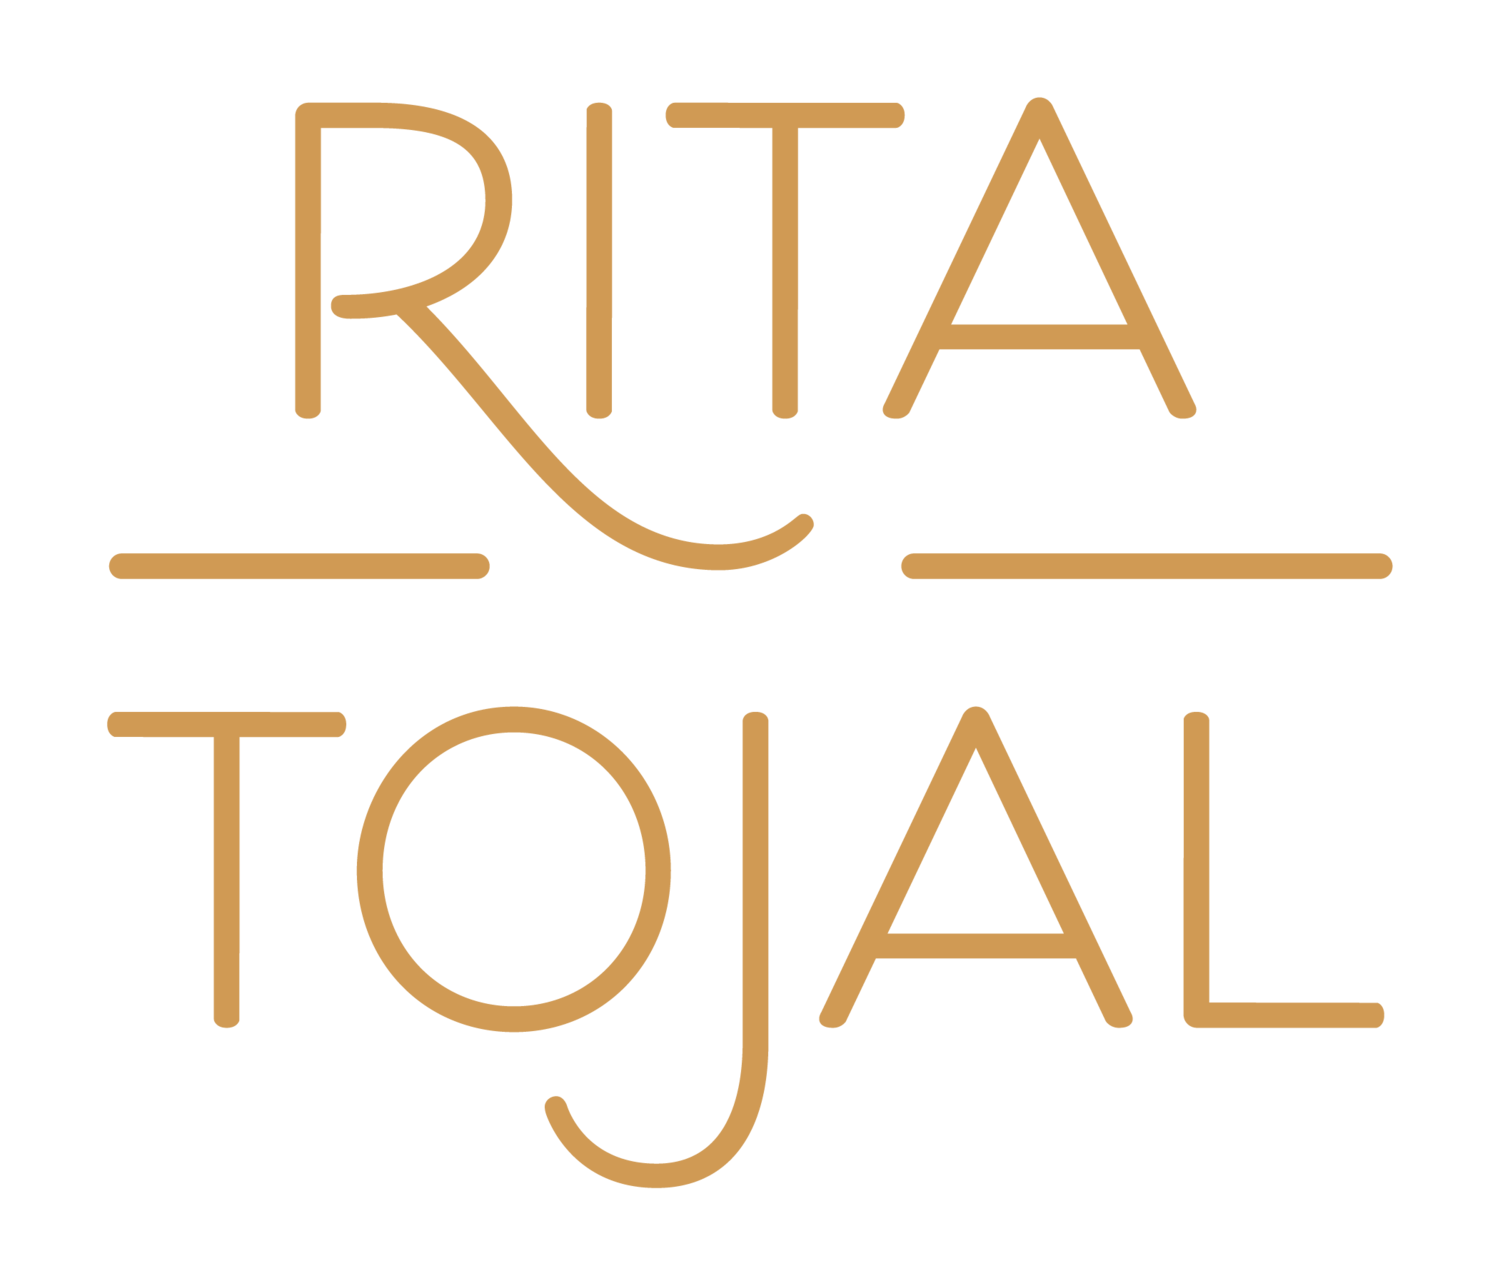 Rita Tojal